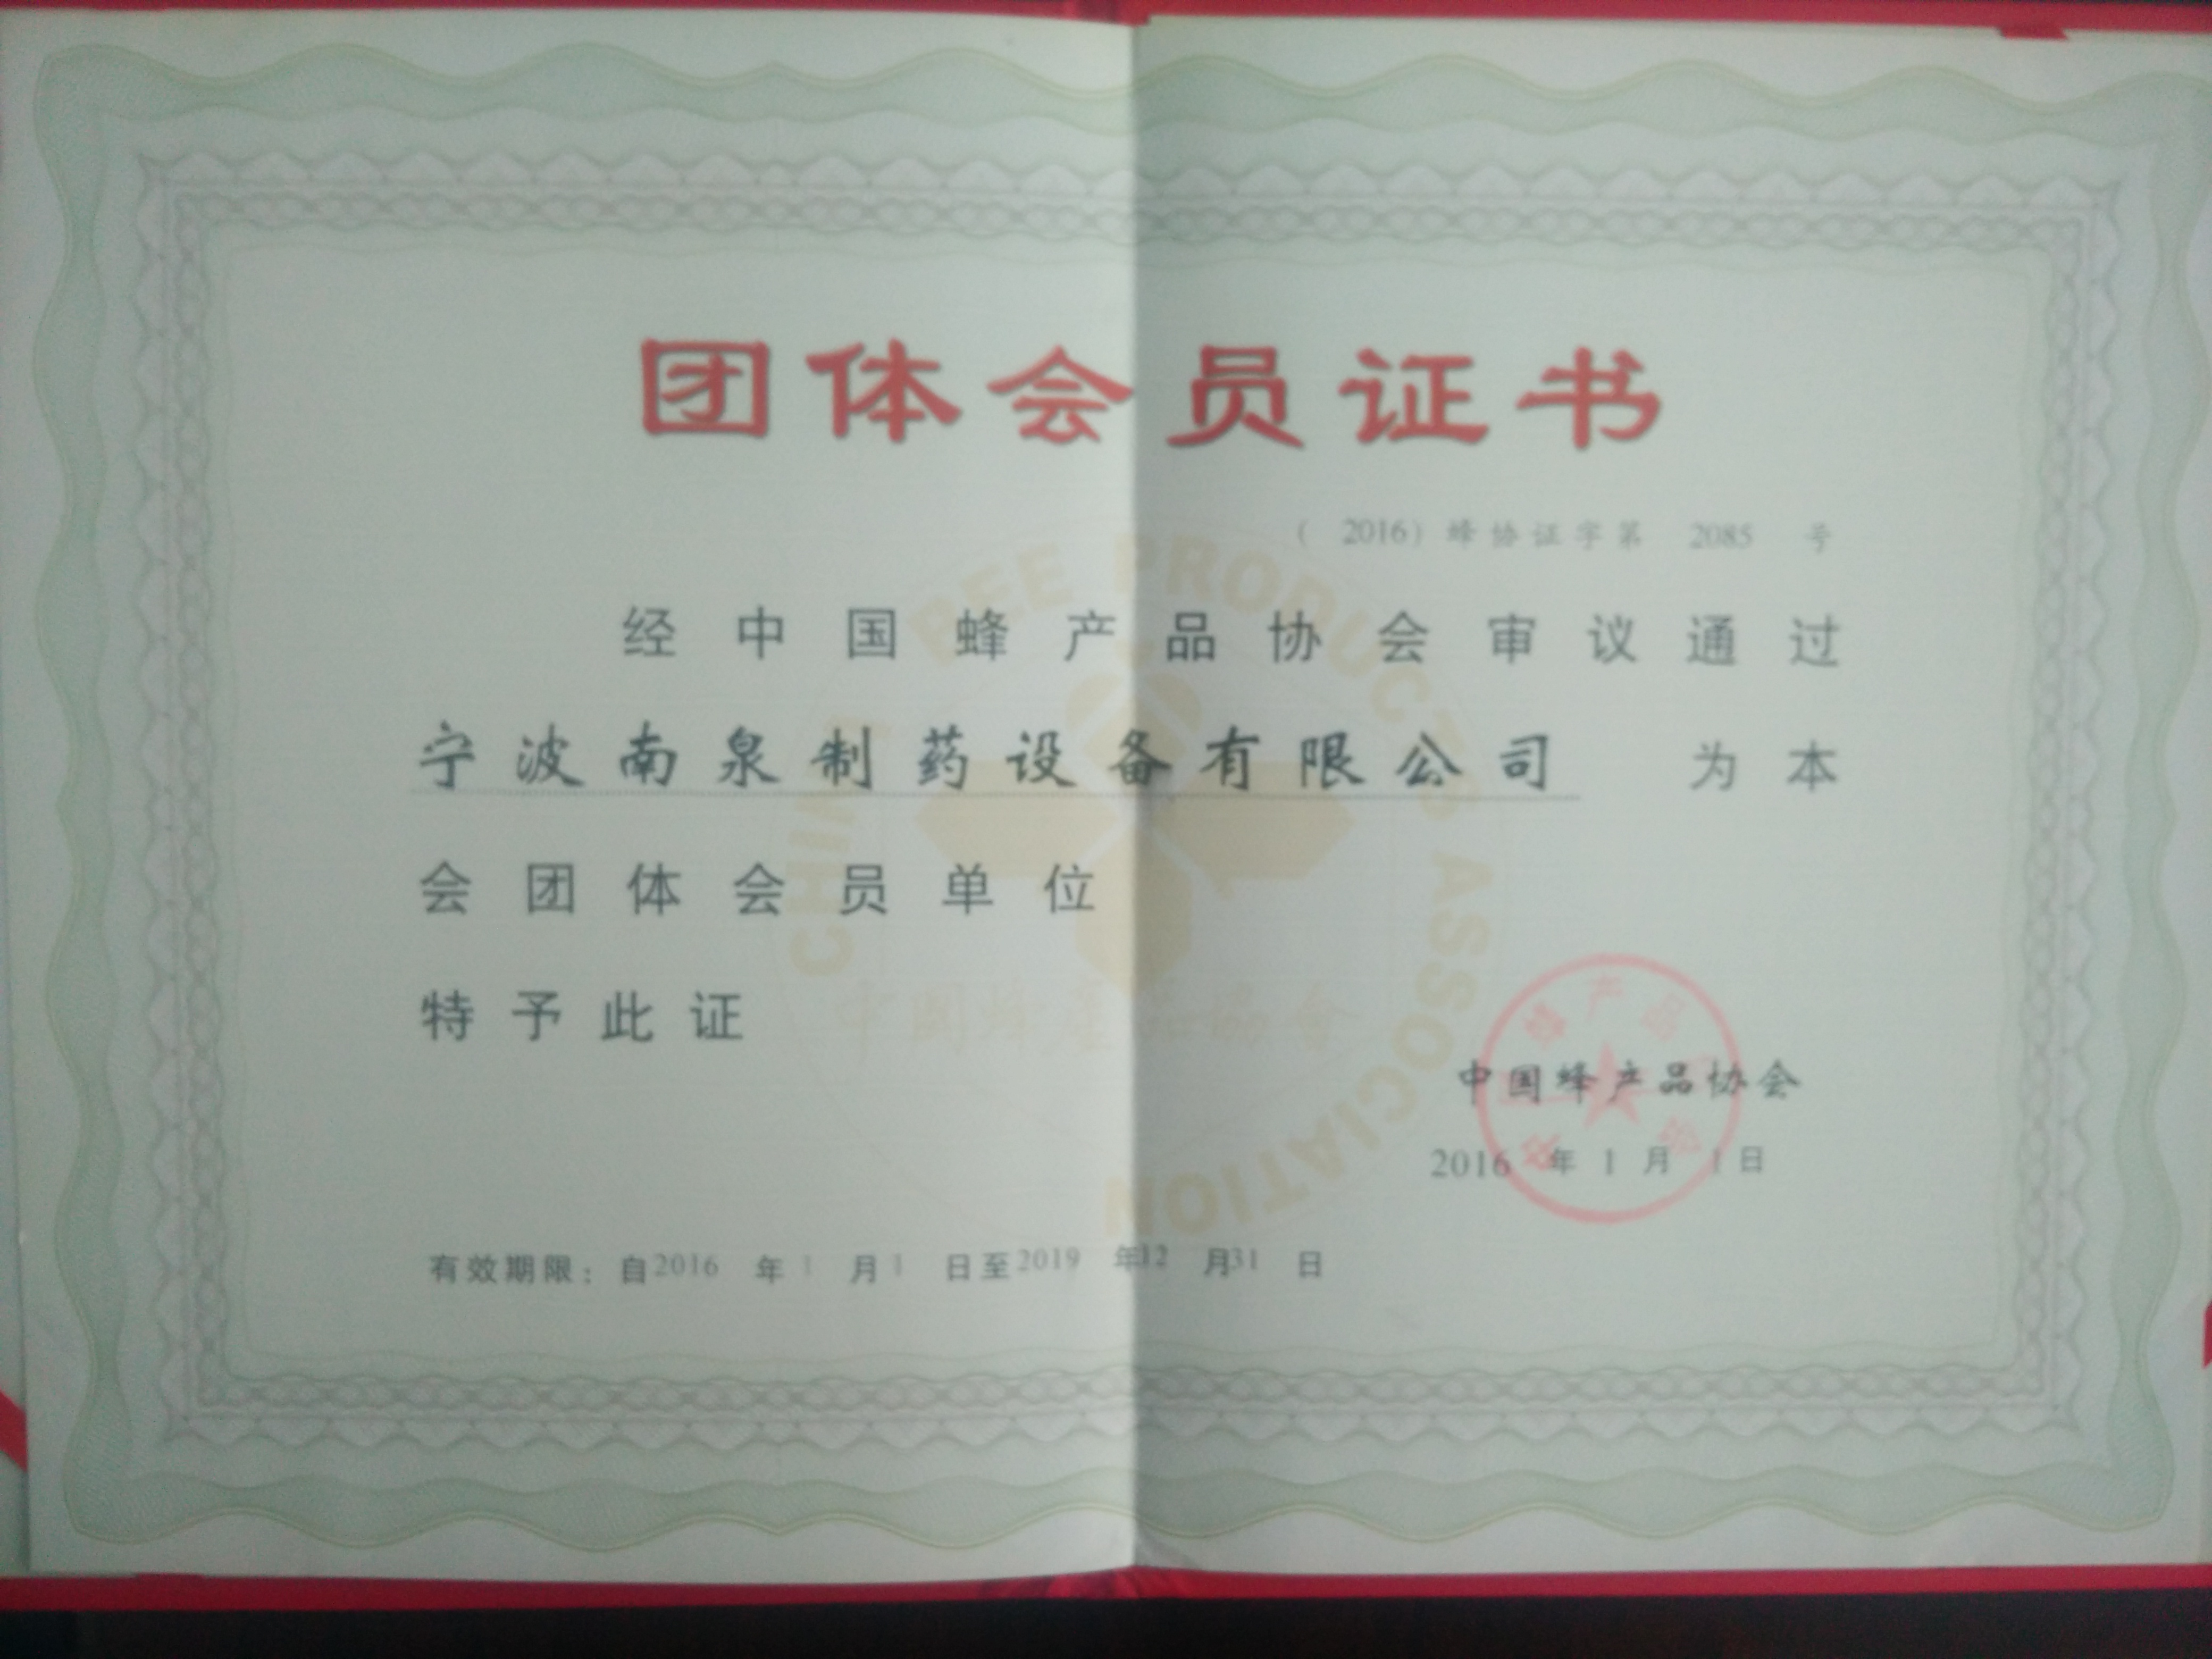 中國蜂產品協會會員證書